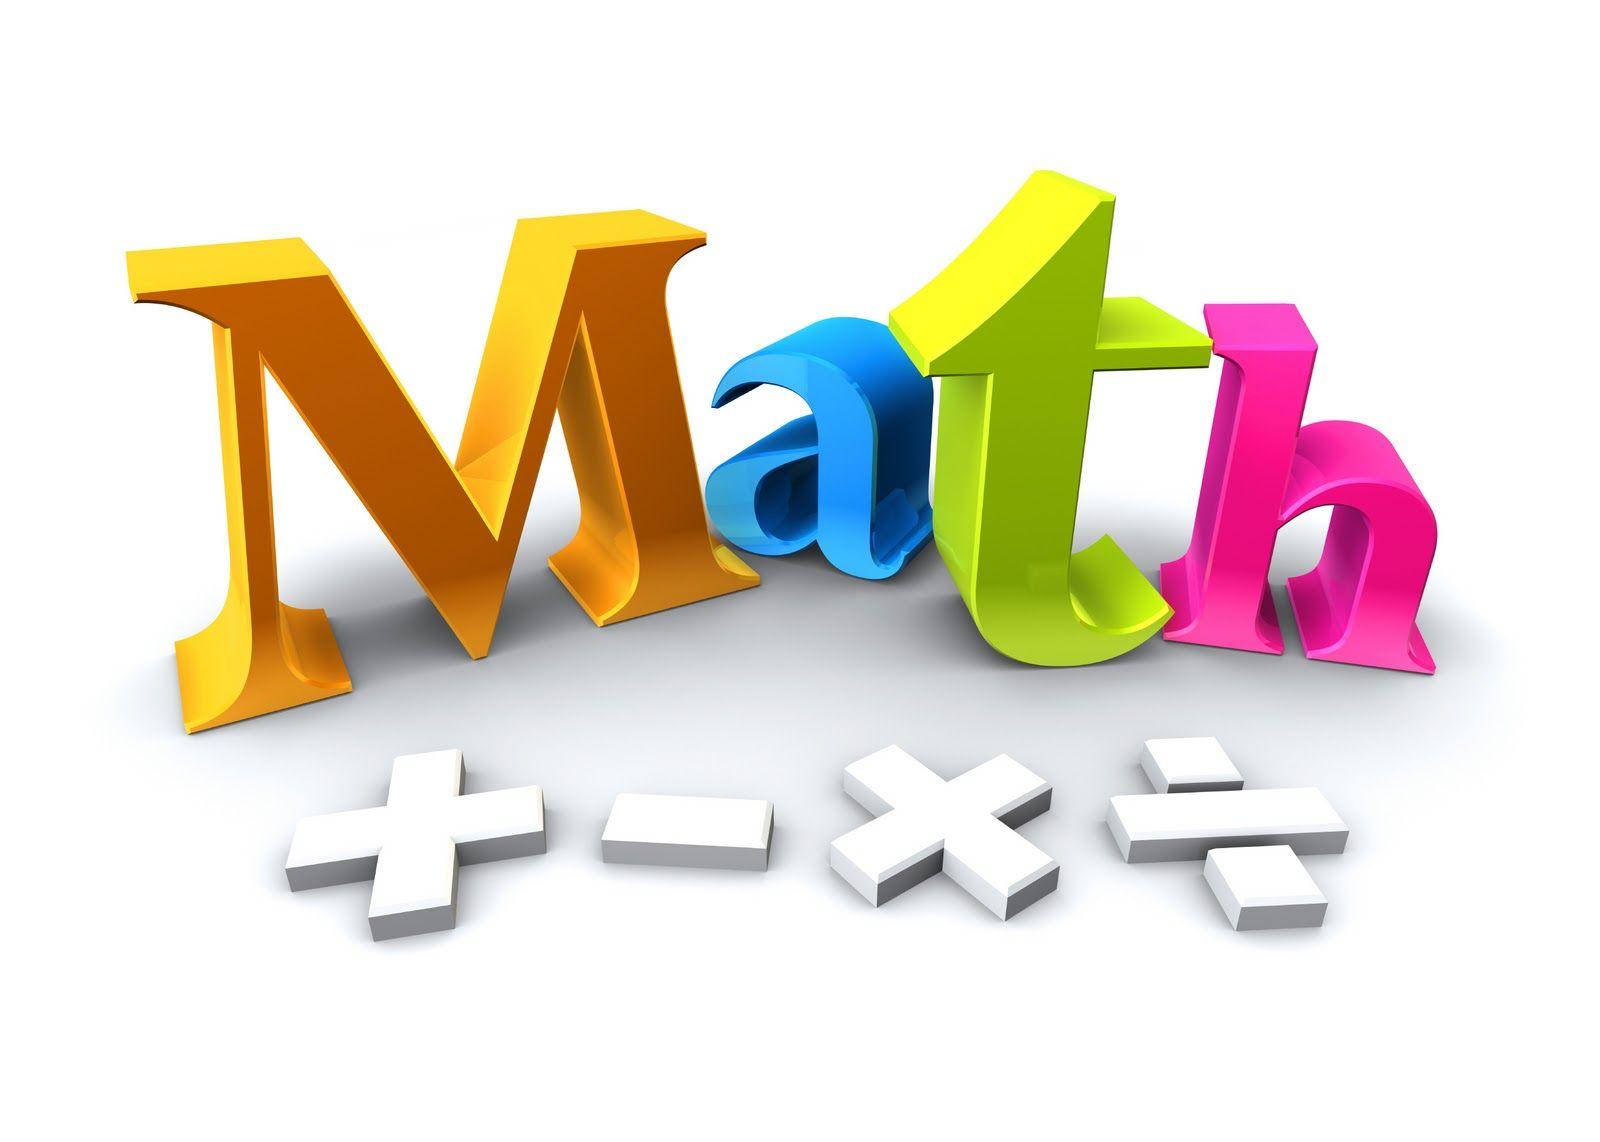 1600x1142 Toán học cho trẻ em.  Nền tảng toán học cho trẻ em trò chơi bổ sung toán học